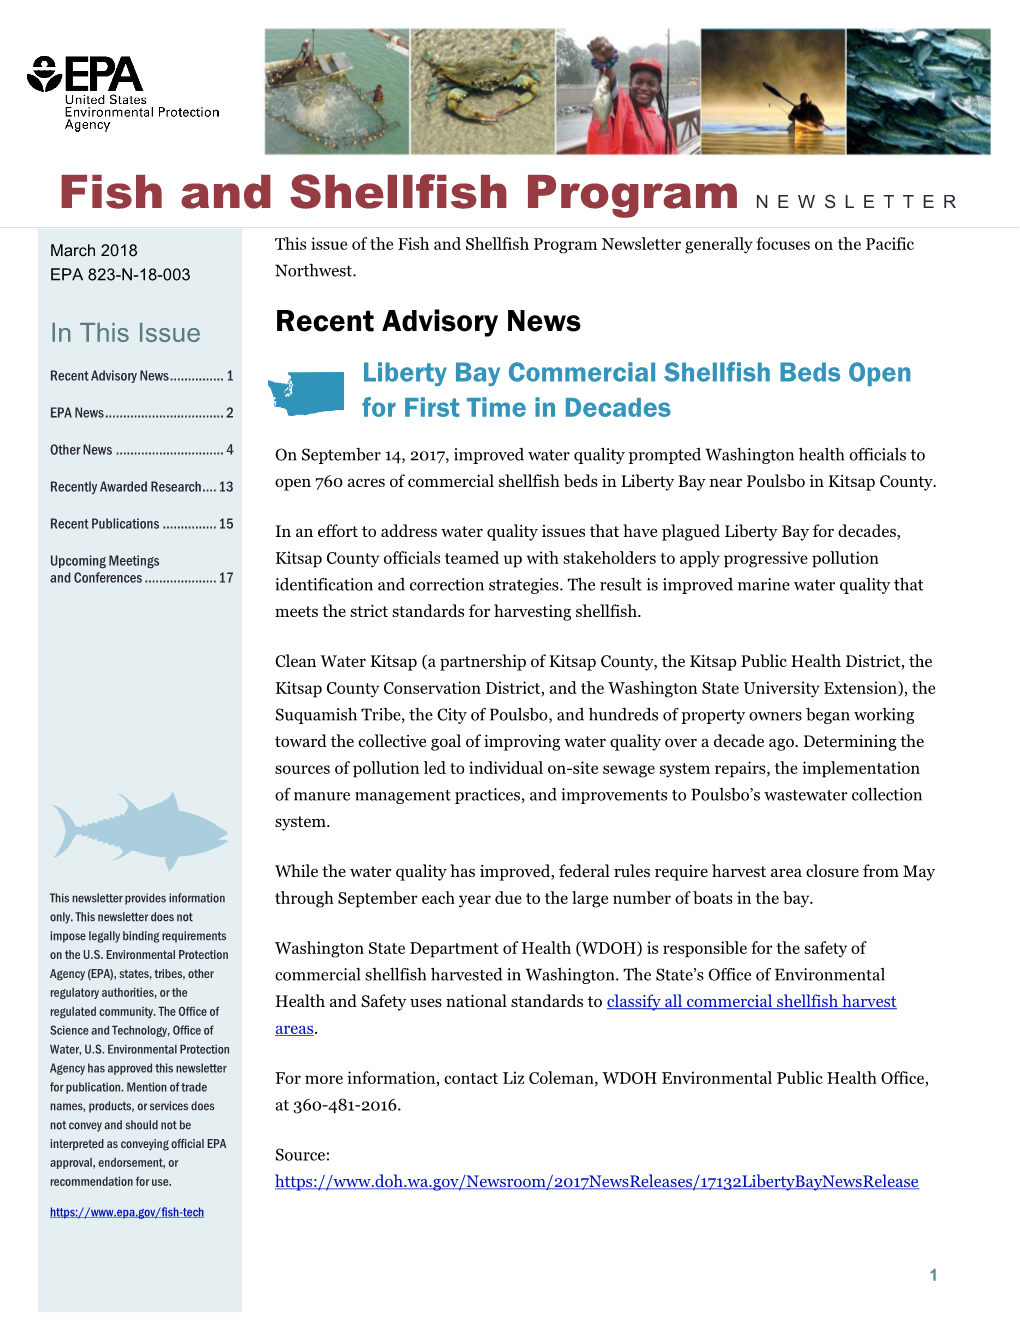 EPA's Fish and Shellfish Program Newsletter